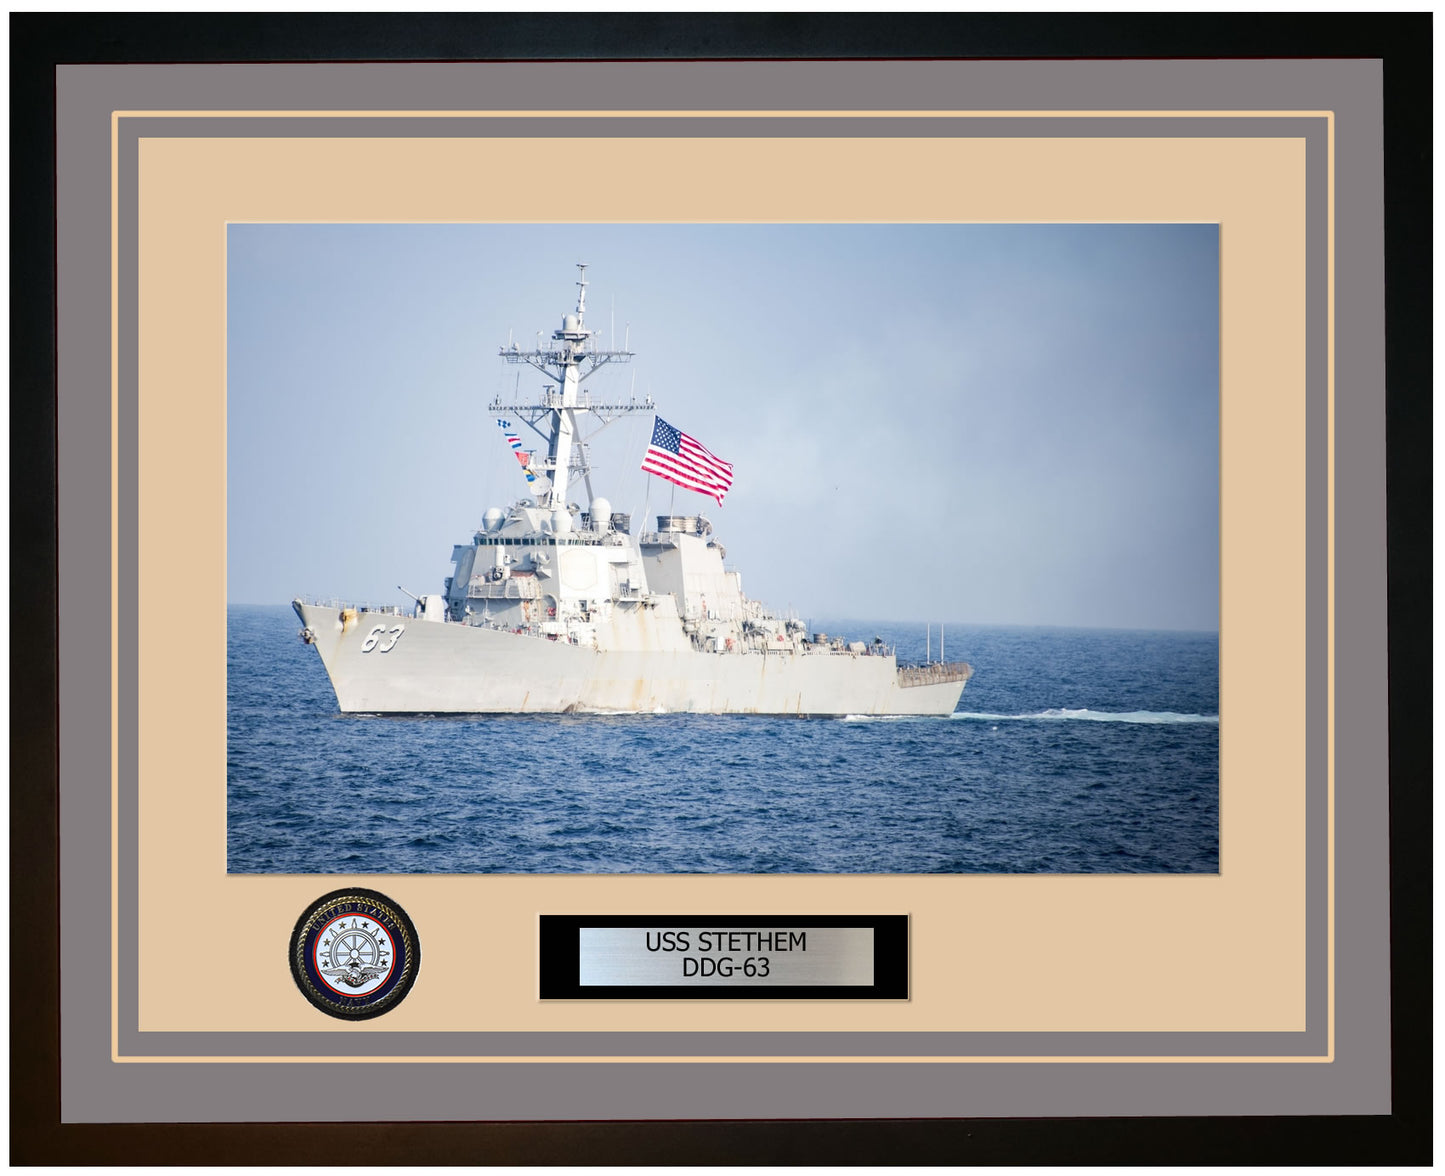 USS STETHEM DDG-63 Framed Navy Ship Photo Grey